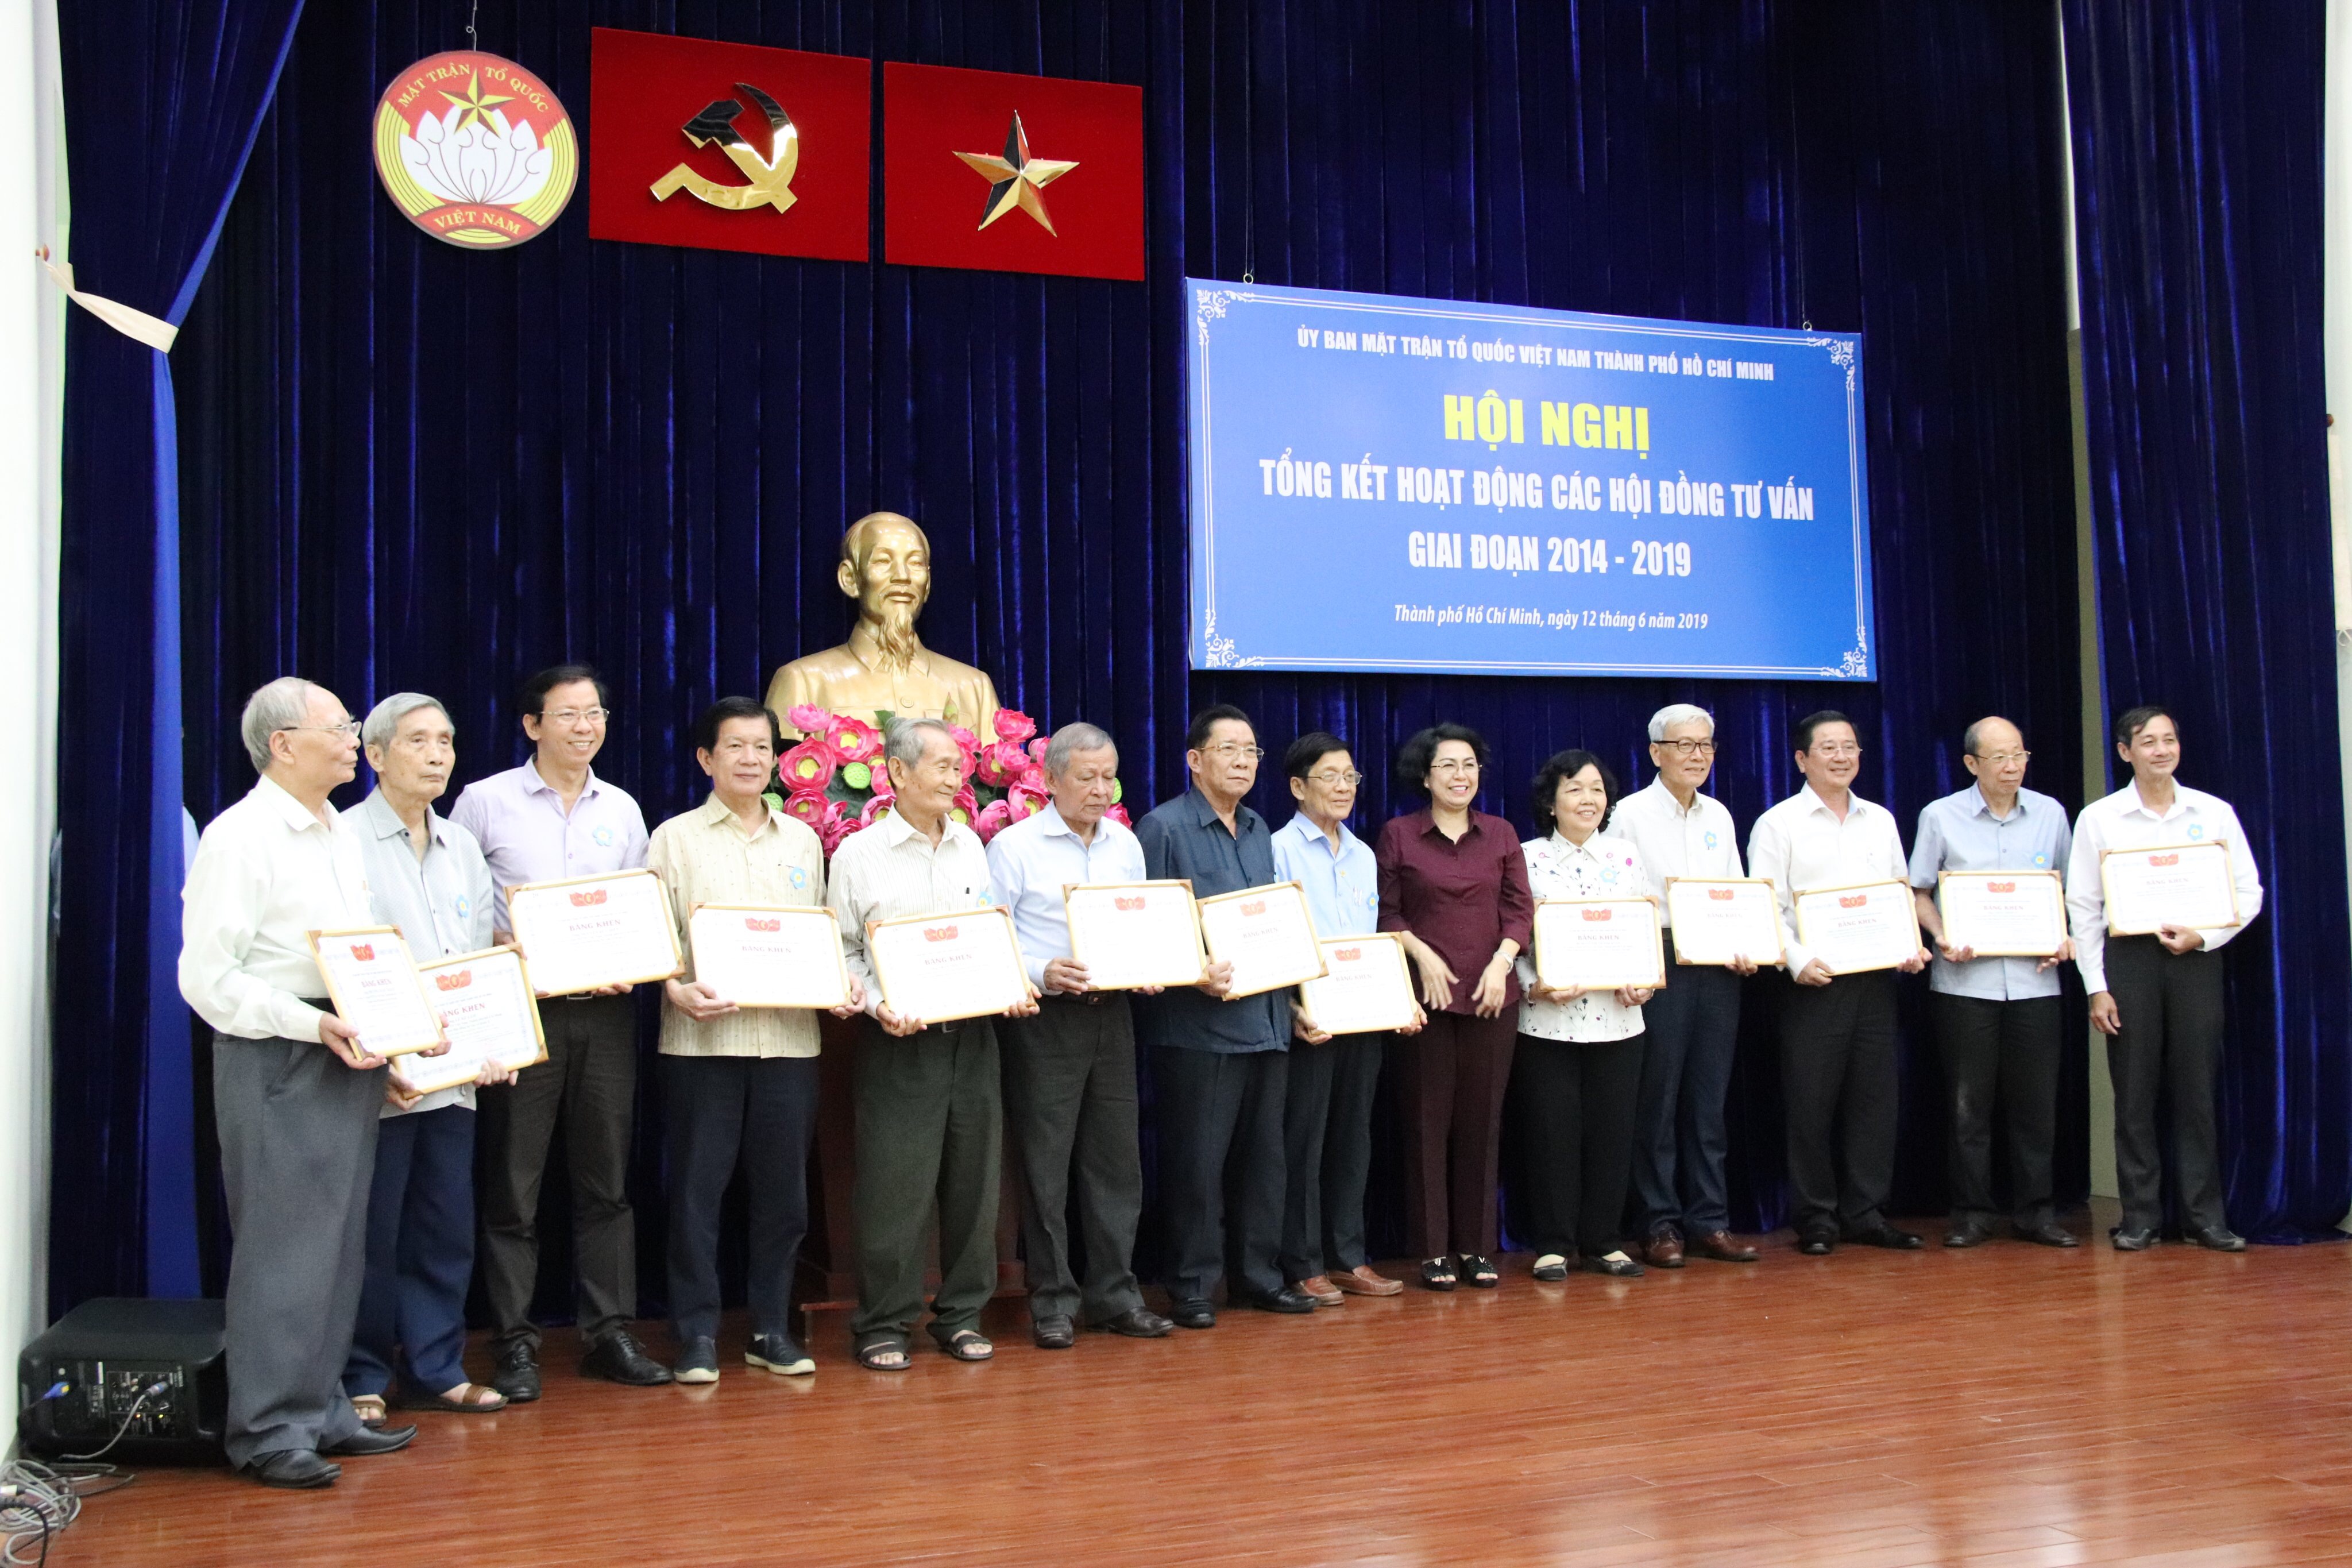 Ông Nguyễn Đức Điền – chủ tịch BDC Group , chủ tịch hội đồng trường đào tạo kỹ năng quản lý SAM nhận Bằng khen